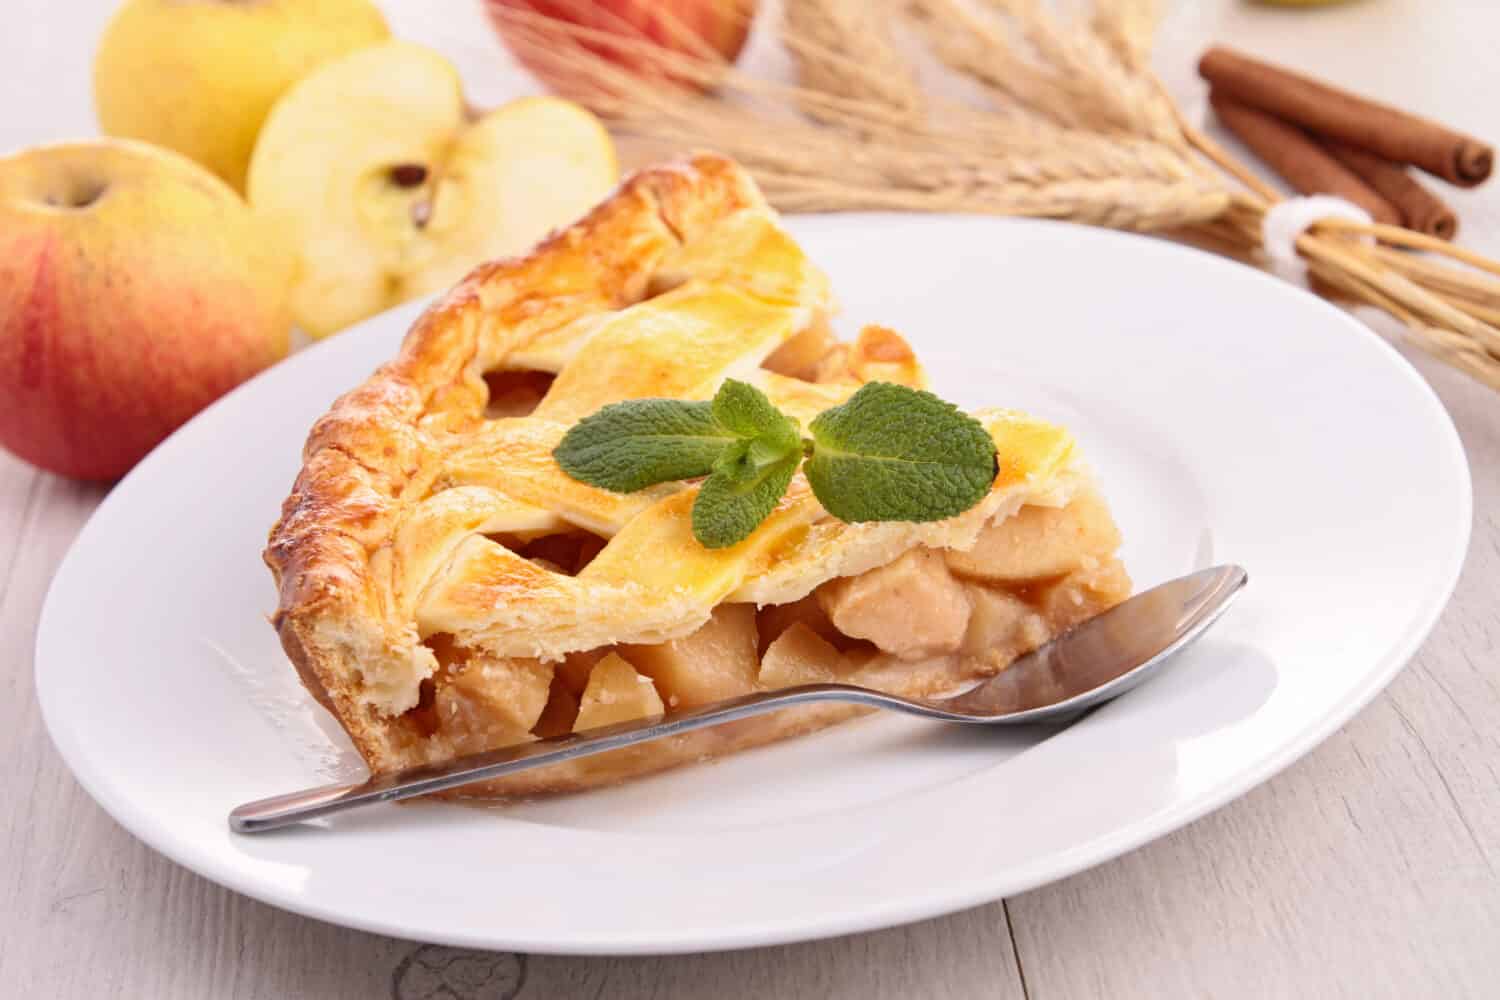 slice of apple pie